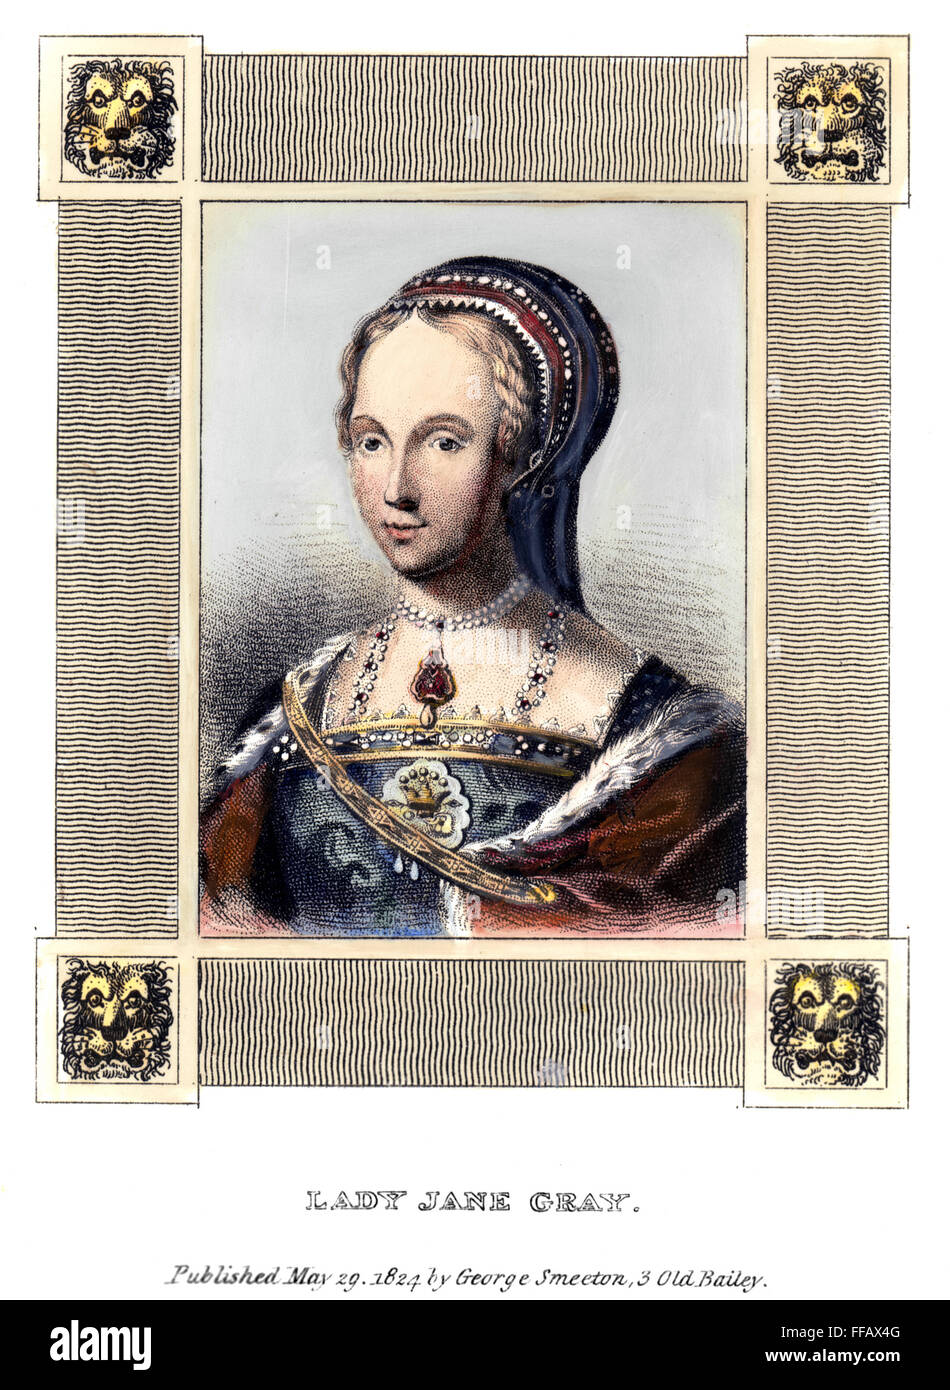 LADY JANE GREY (1537-1554). /nQueen von England, 9 Juli - 18 Juli 1553. Linie-und-Stipple Gravur, Englisch, 1824. Stockfoto